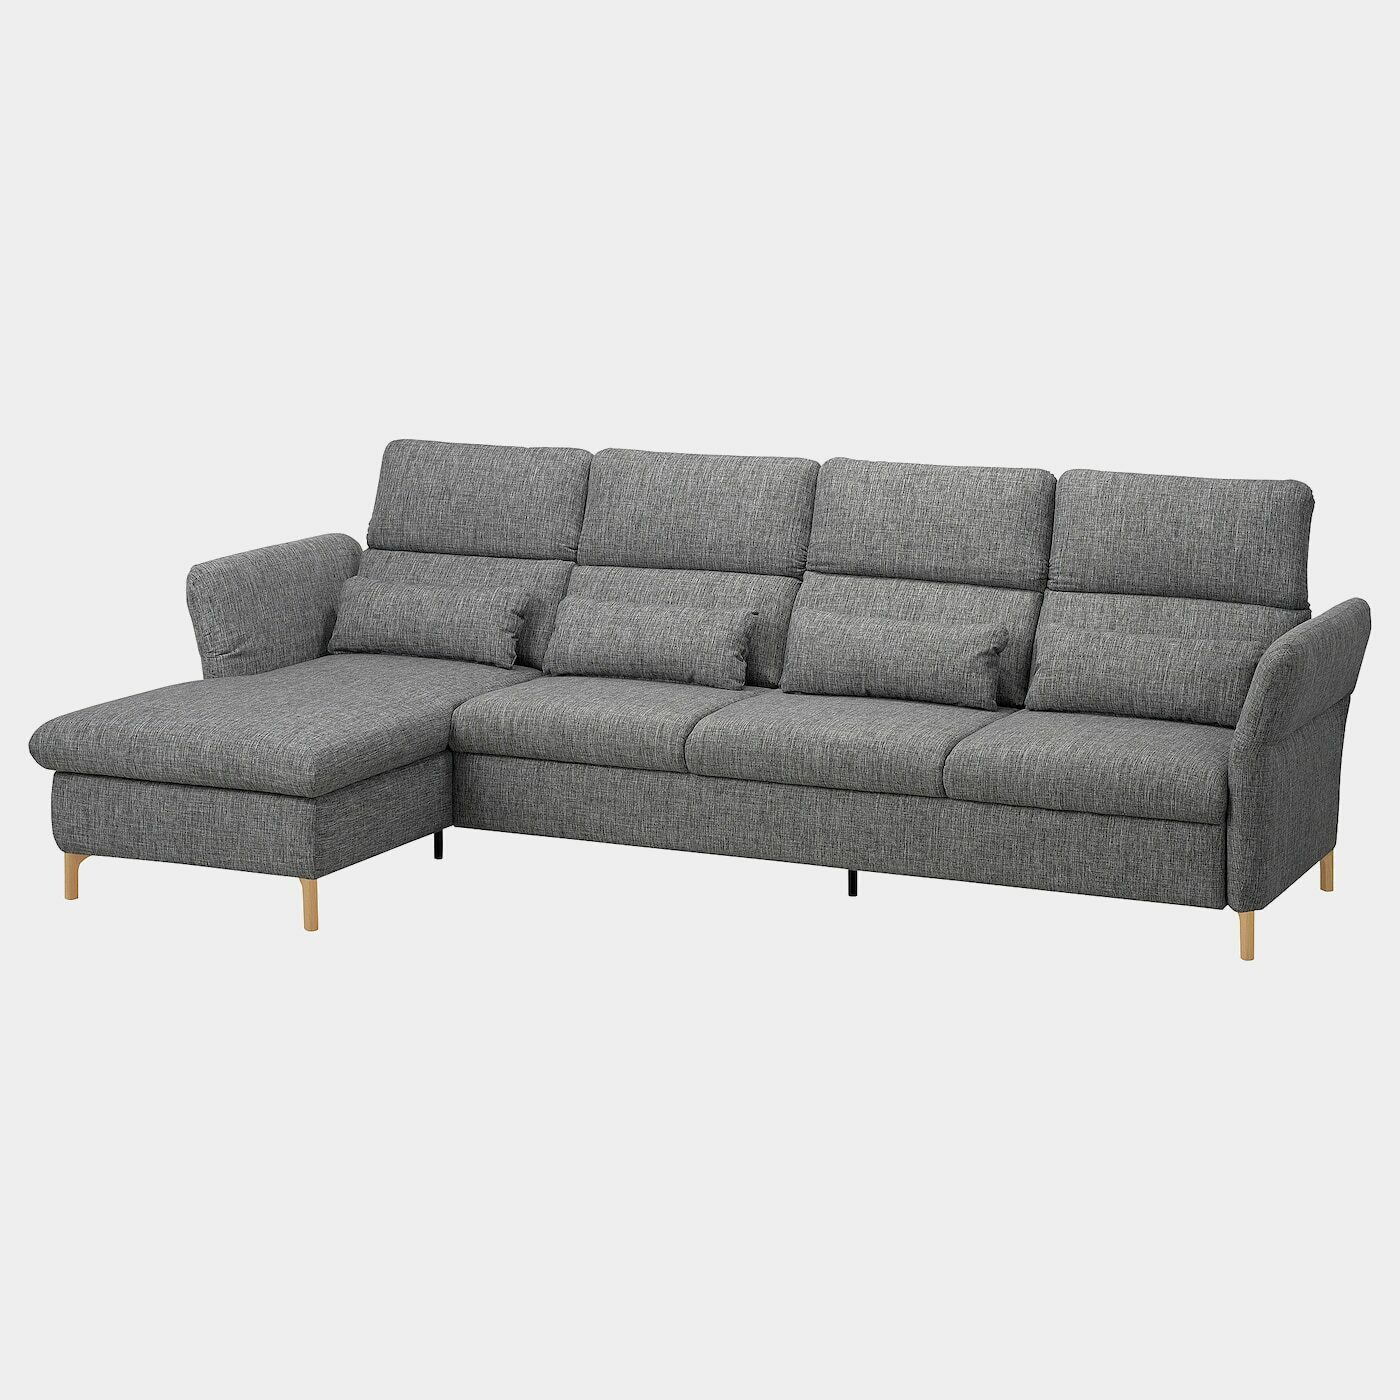 FAMMARP 4er-Sofa mit Récamiere  -  - Möbel Ideen für dein Zuhause von Home Trends. Möbel Trends von Social Media Influencer für dein Skandi Zuhause.